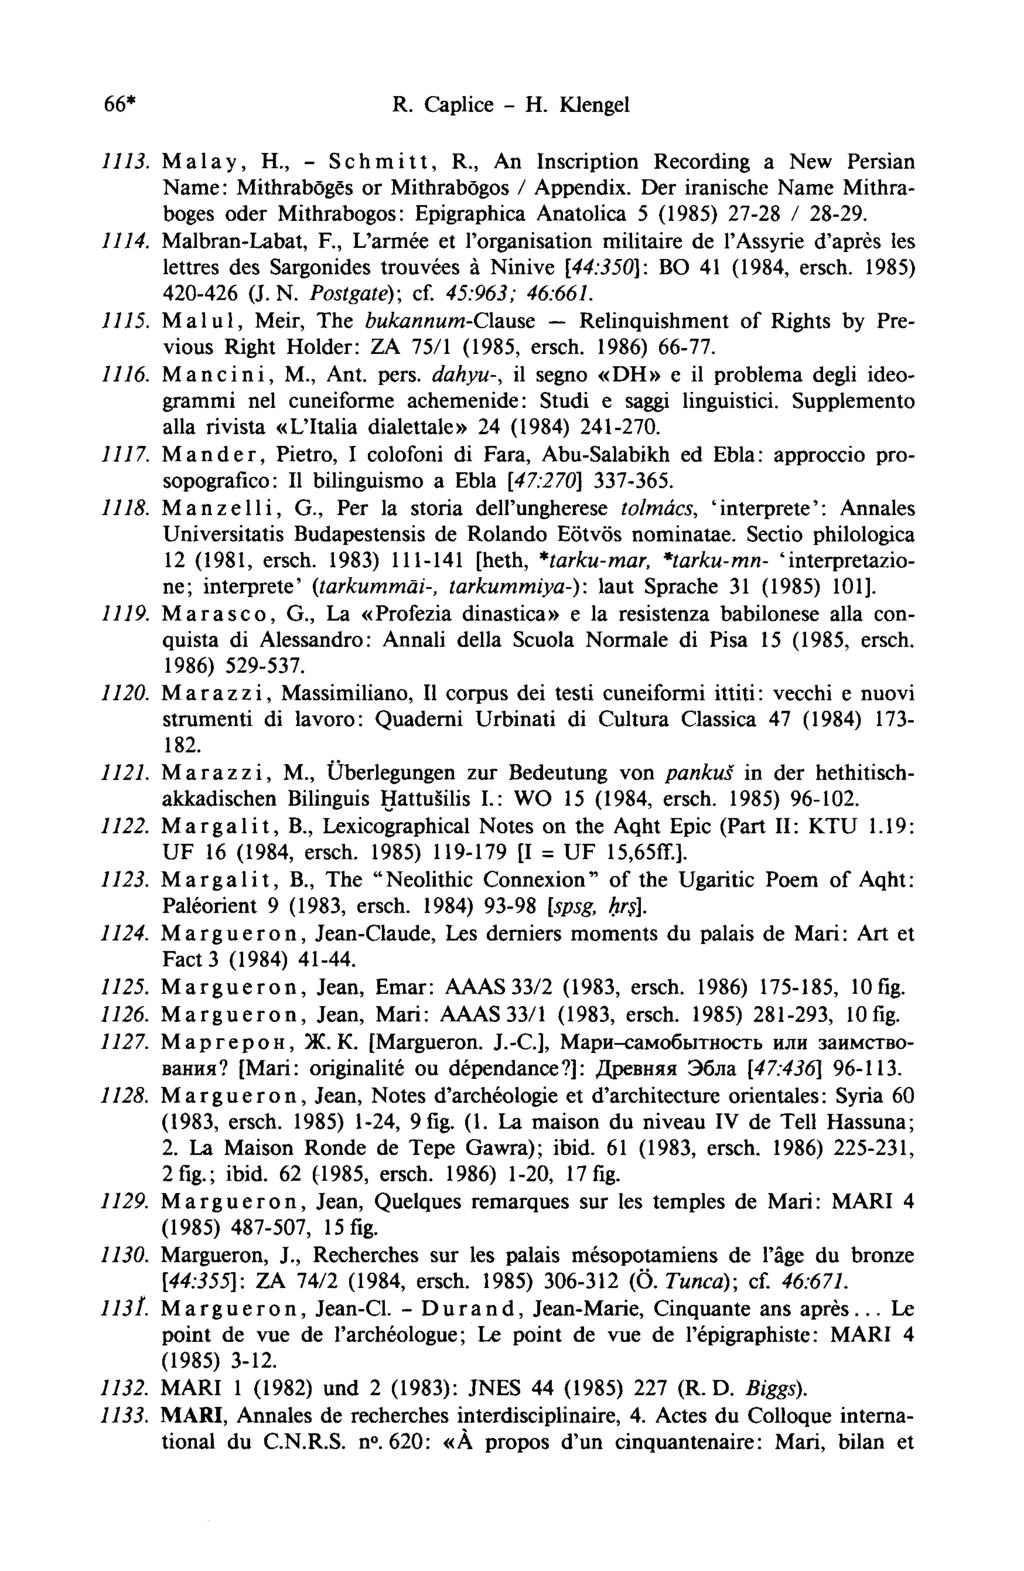 66* R. Caplice - H. Klengel 1113. Malay, H., - Schmitt, R., An Inscription Recording a New Persian Name: Mithrabôgês or Mithrabögos / Appendix.